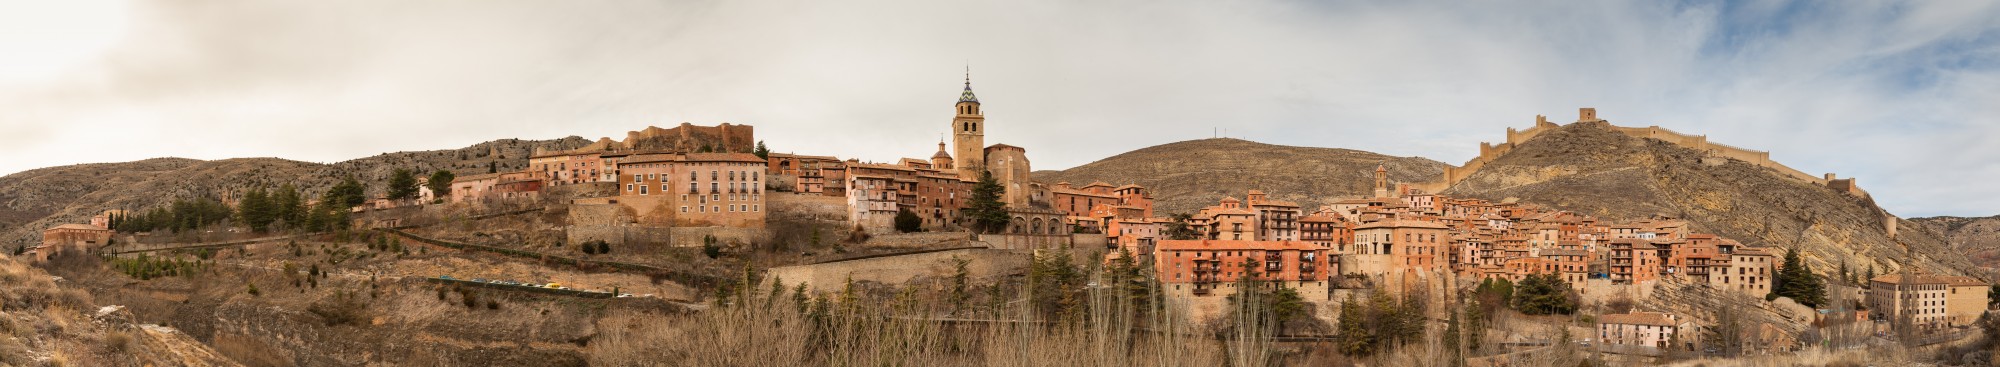 Albarracín, Teruel, España, 2014-01-10, DD 135-139 PAN